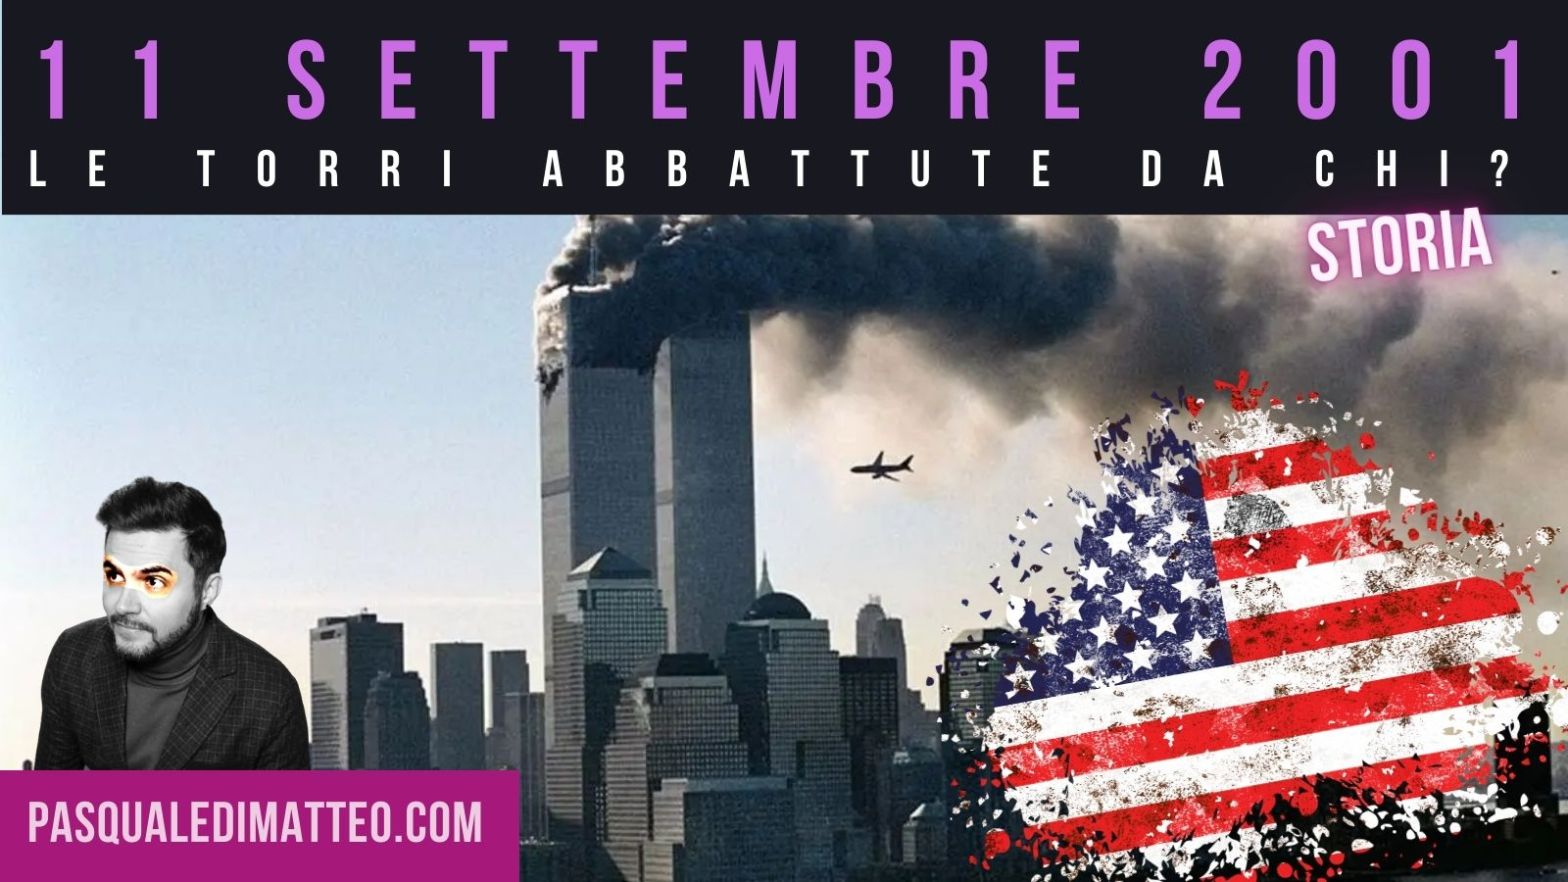 11 settembre 2001, il crollo delle Torri Gemelle, abbattute dagli aerei